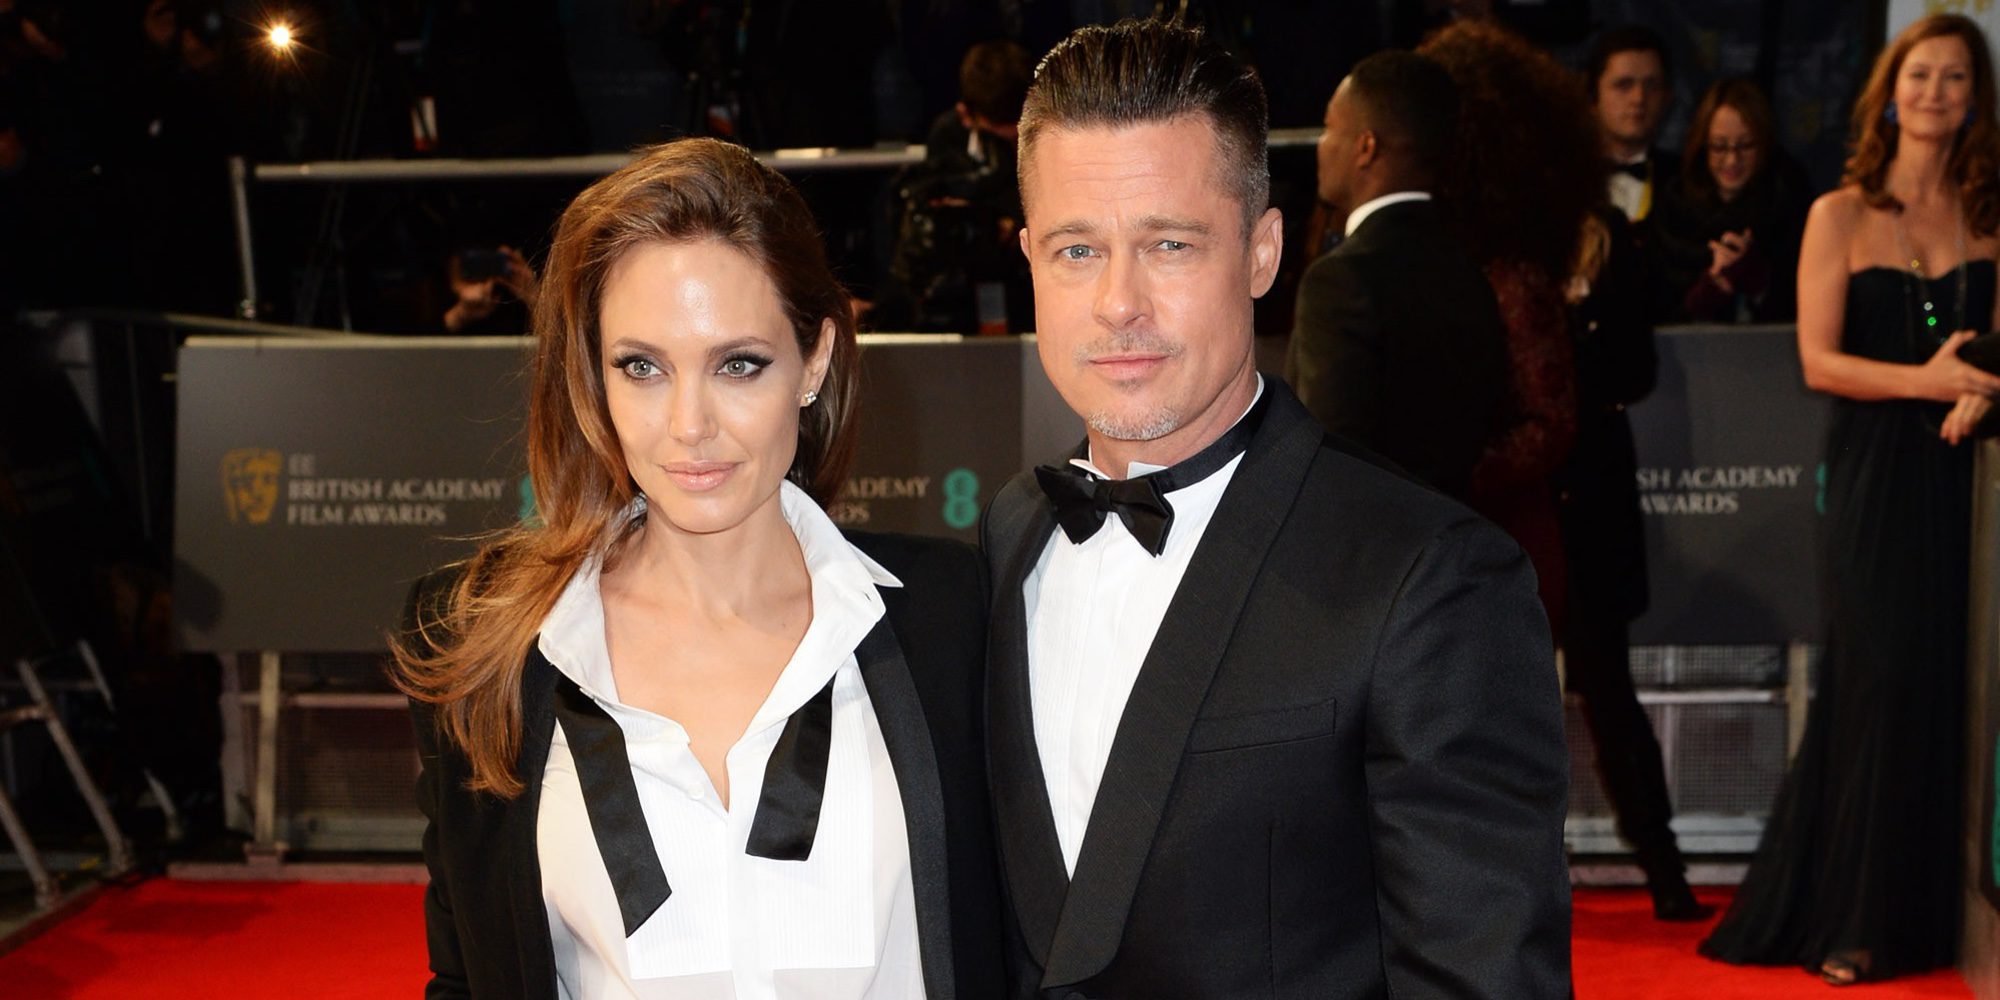 Brad Pitt y Angelina Jolie llegan a un acuerdo por el bien de sus hijos cuatro meses después de su separación